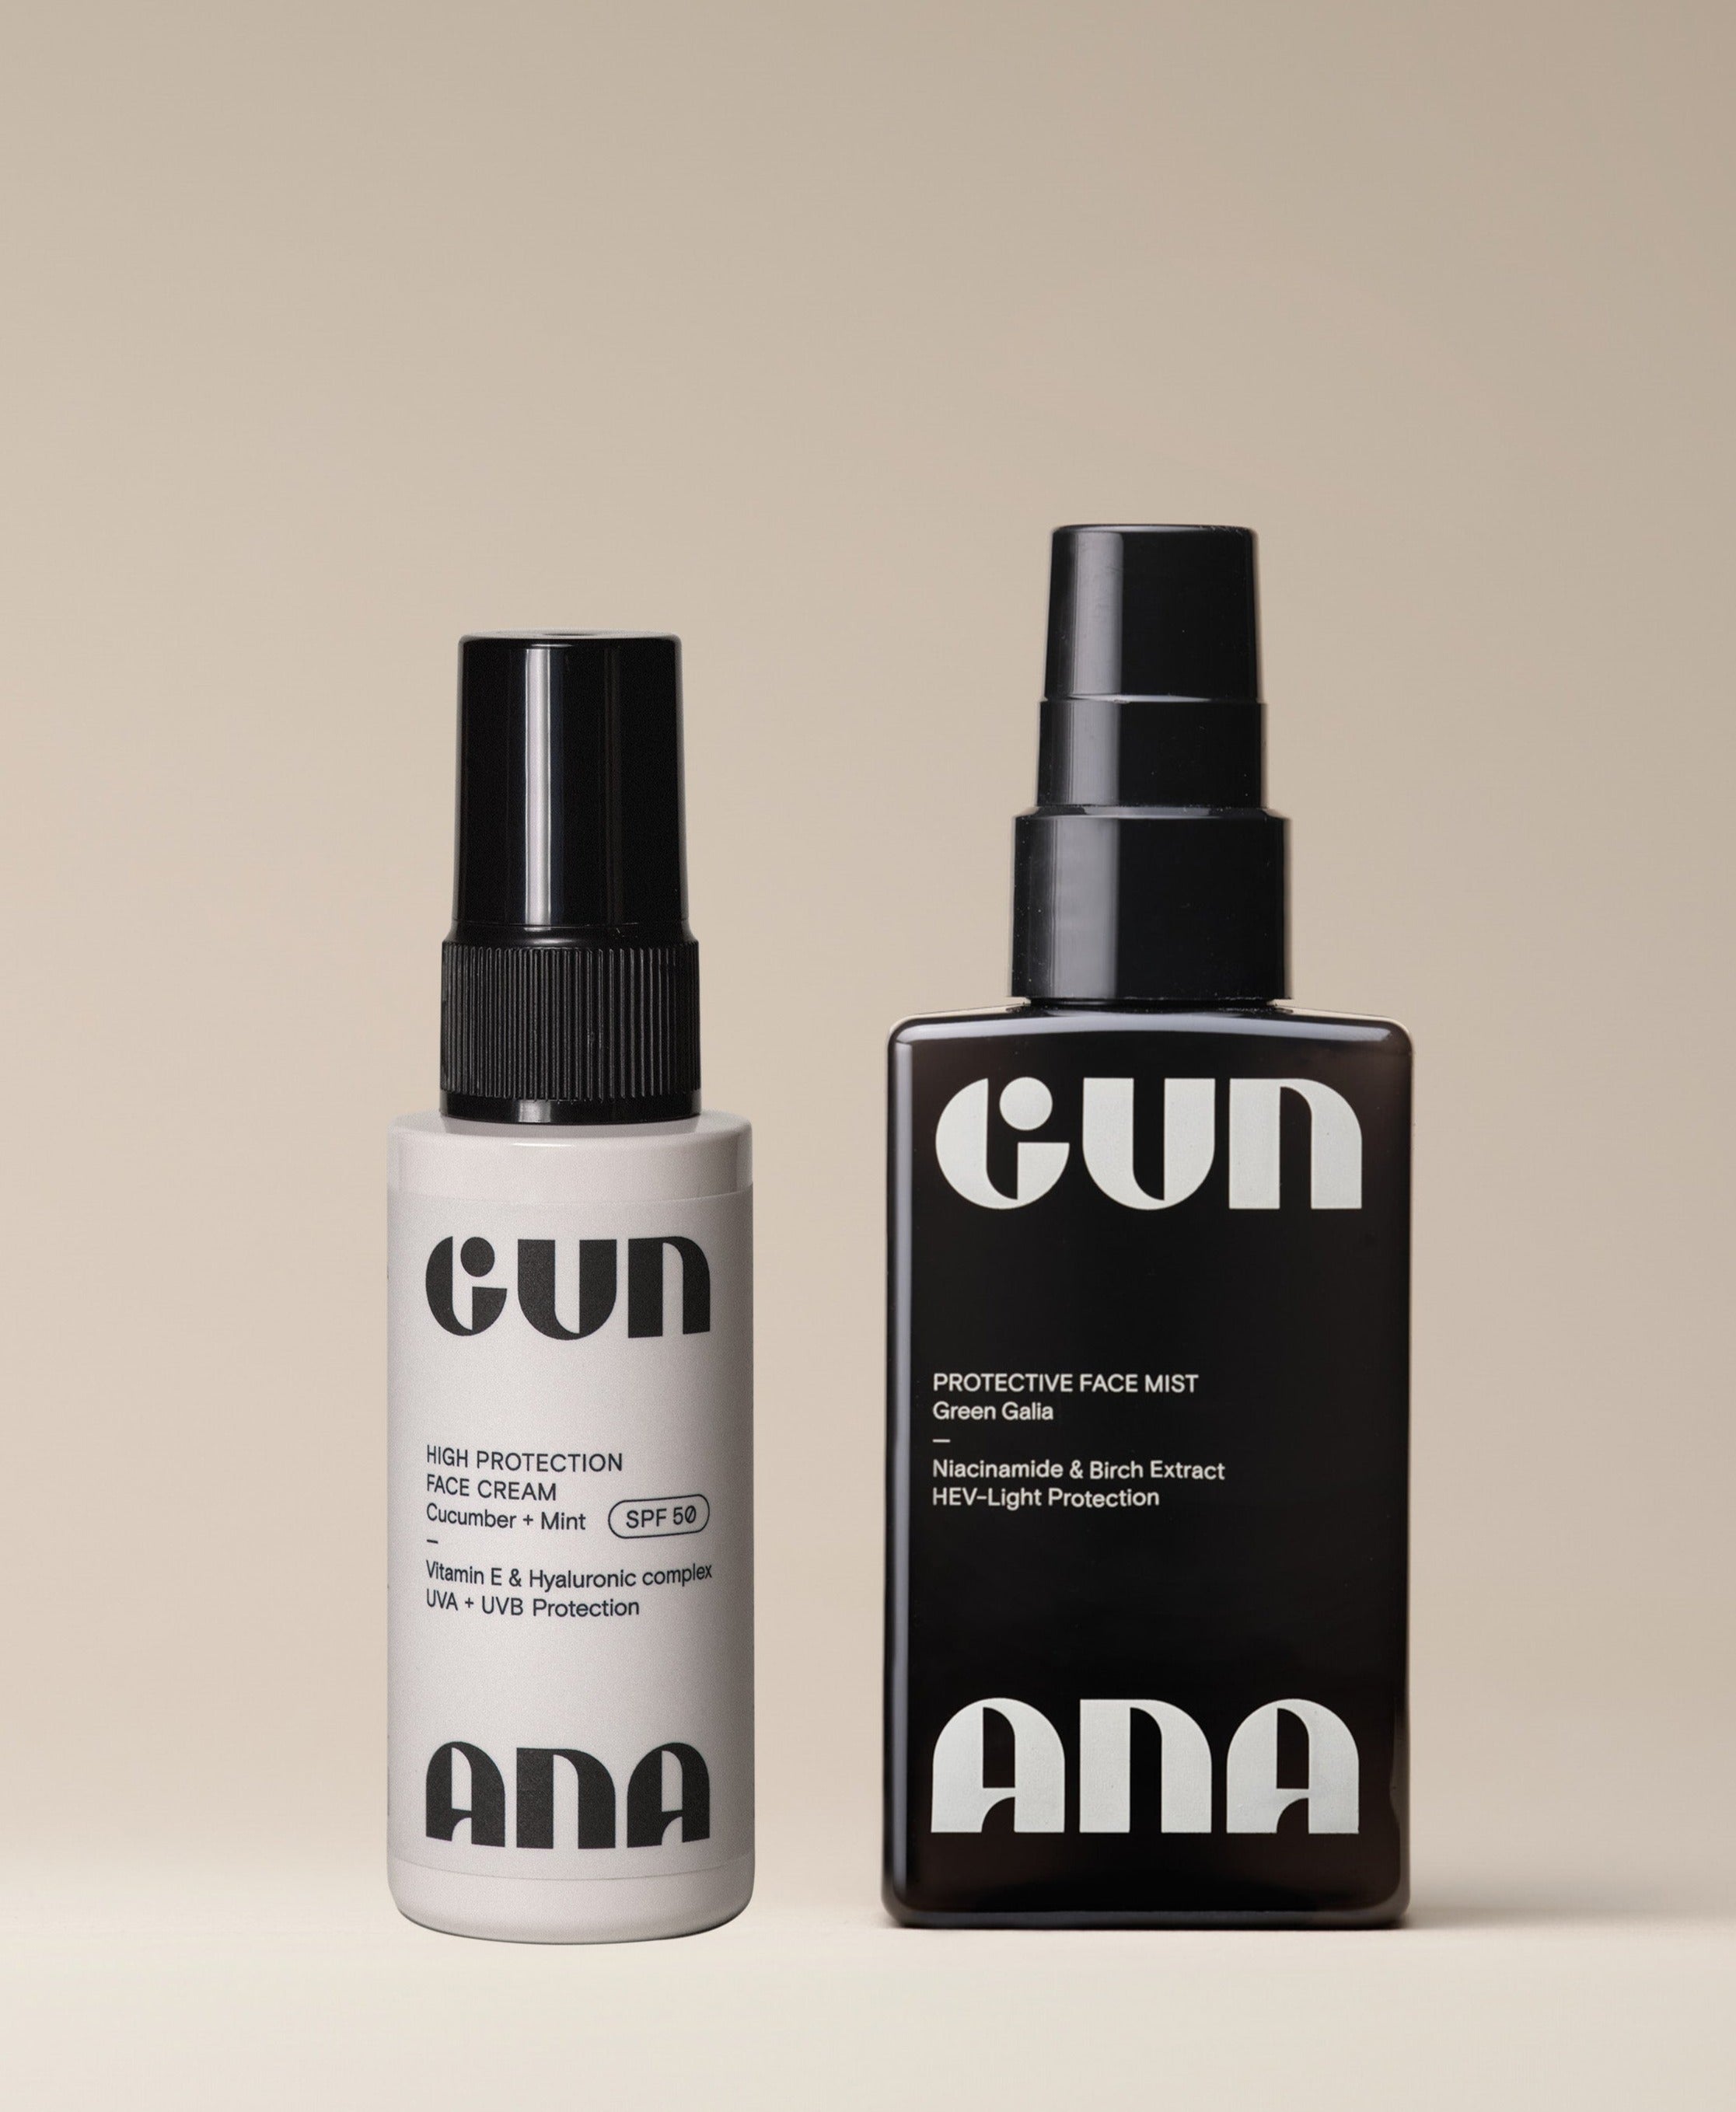 THE FACE SHIELD - Gun Ana